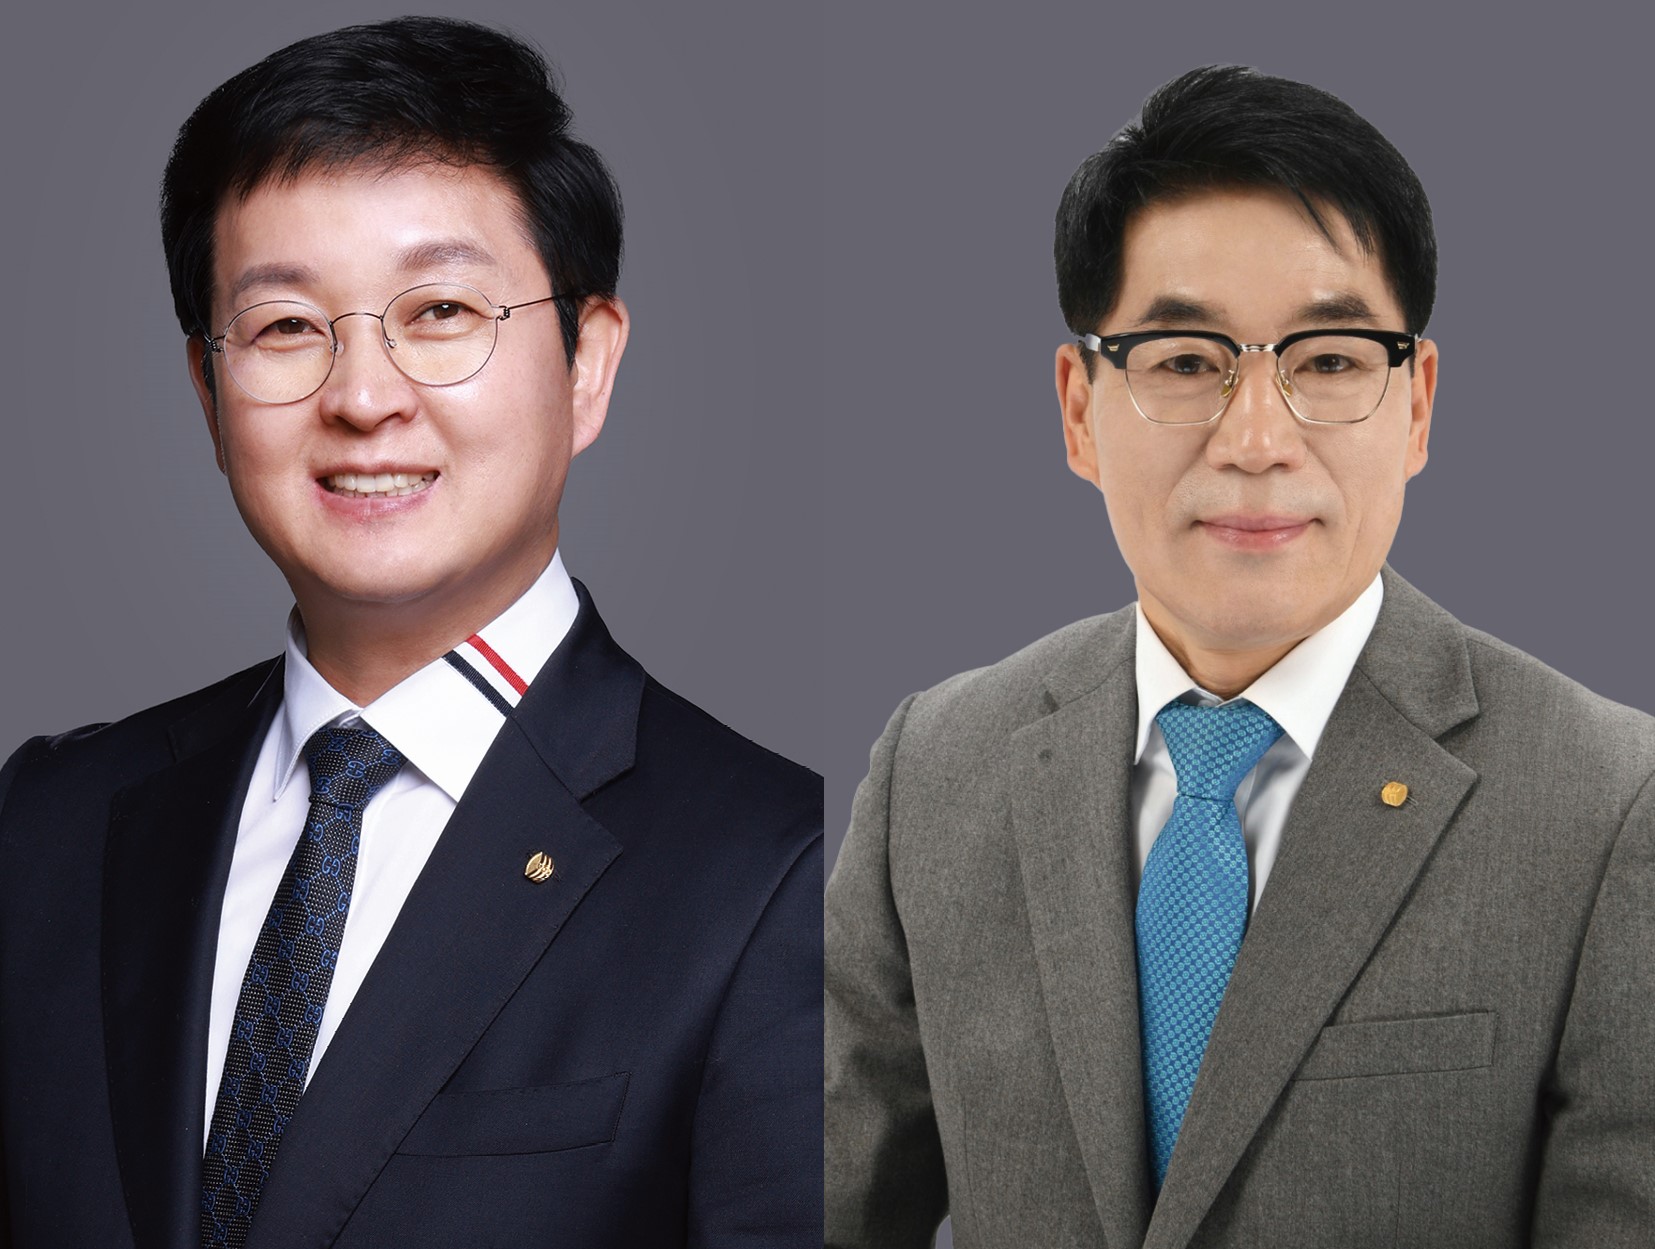 기호1번 신영일 후보(왼쪽)와 기호2번 허봉현 후보